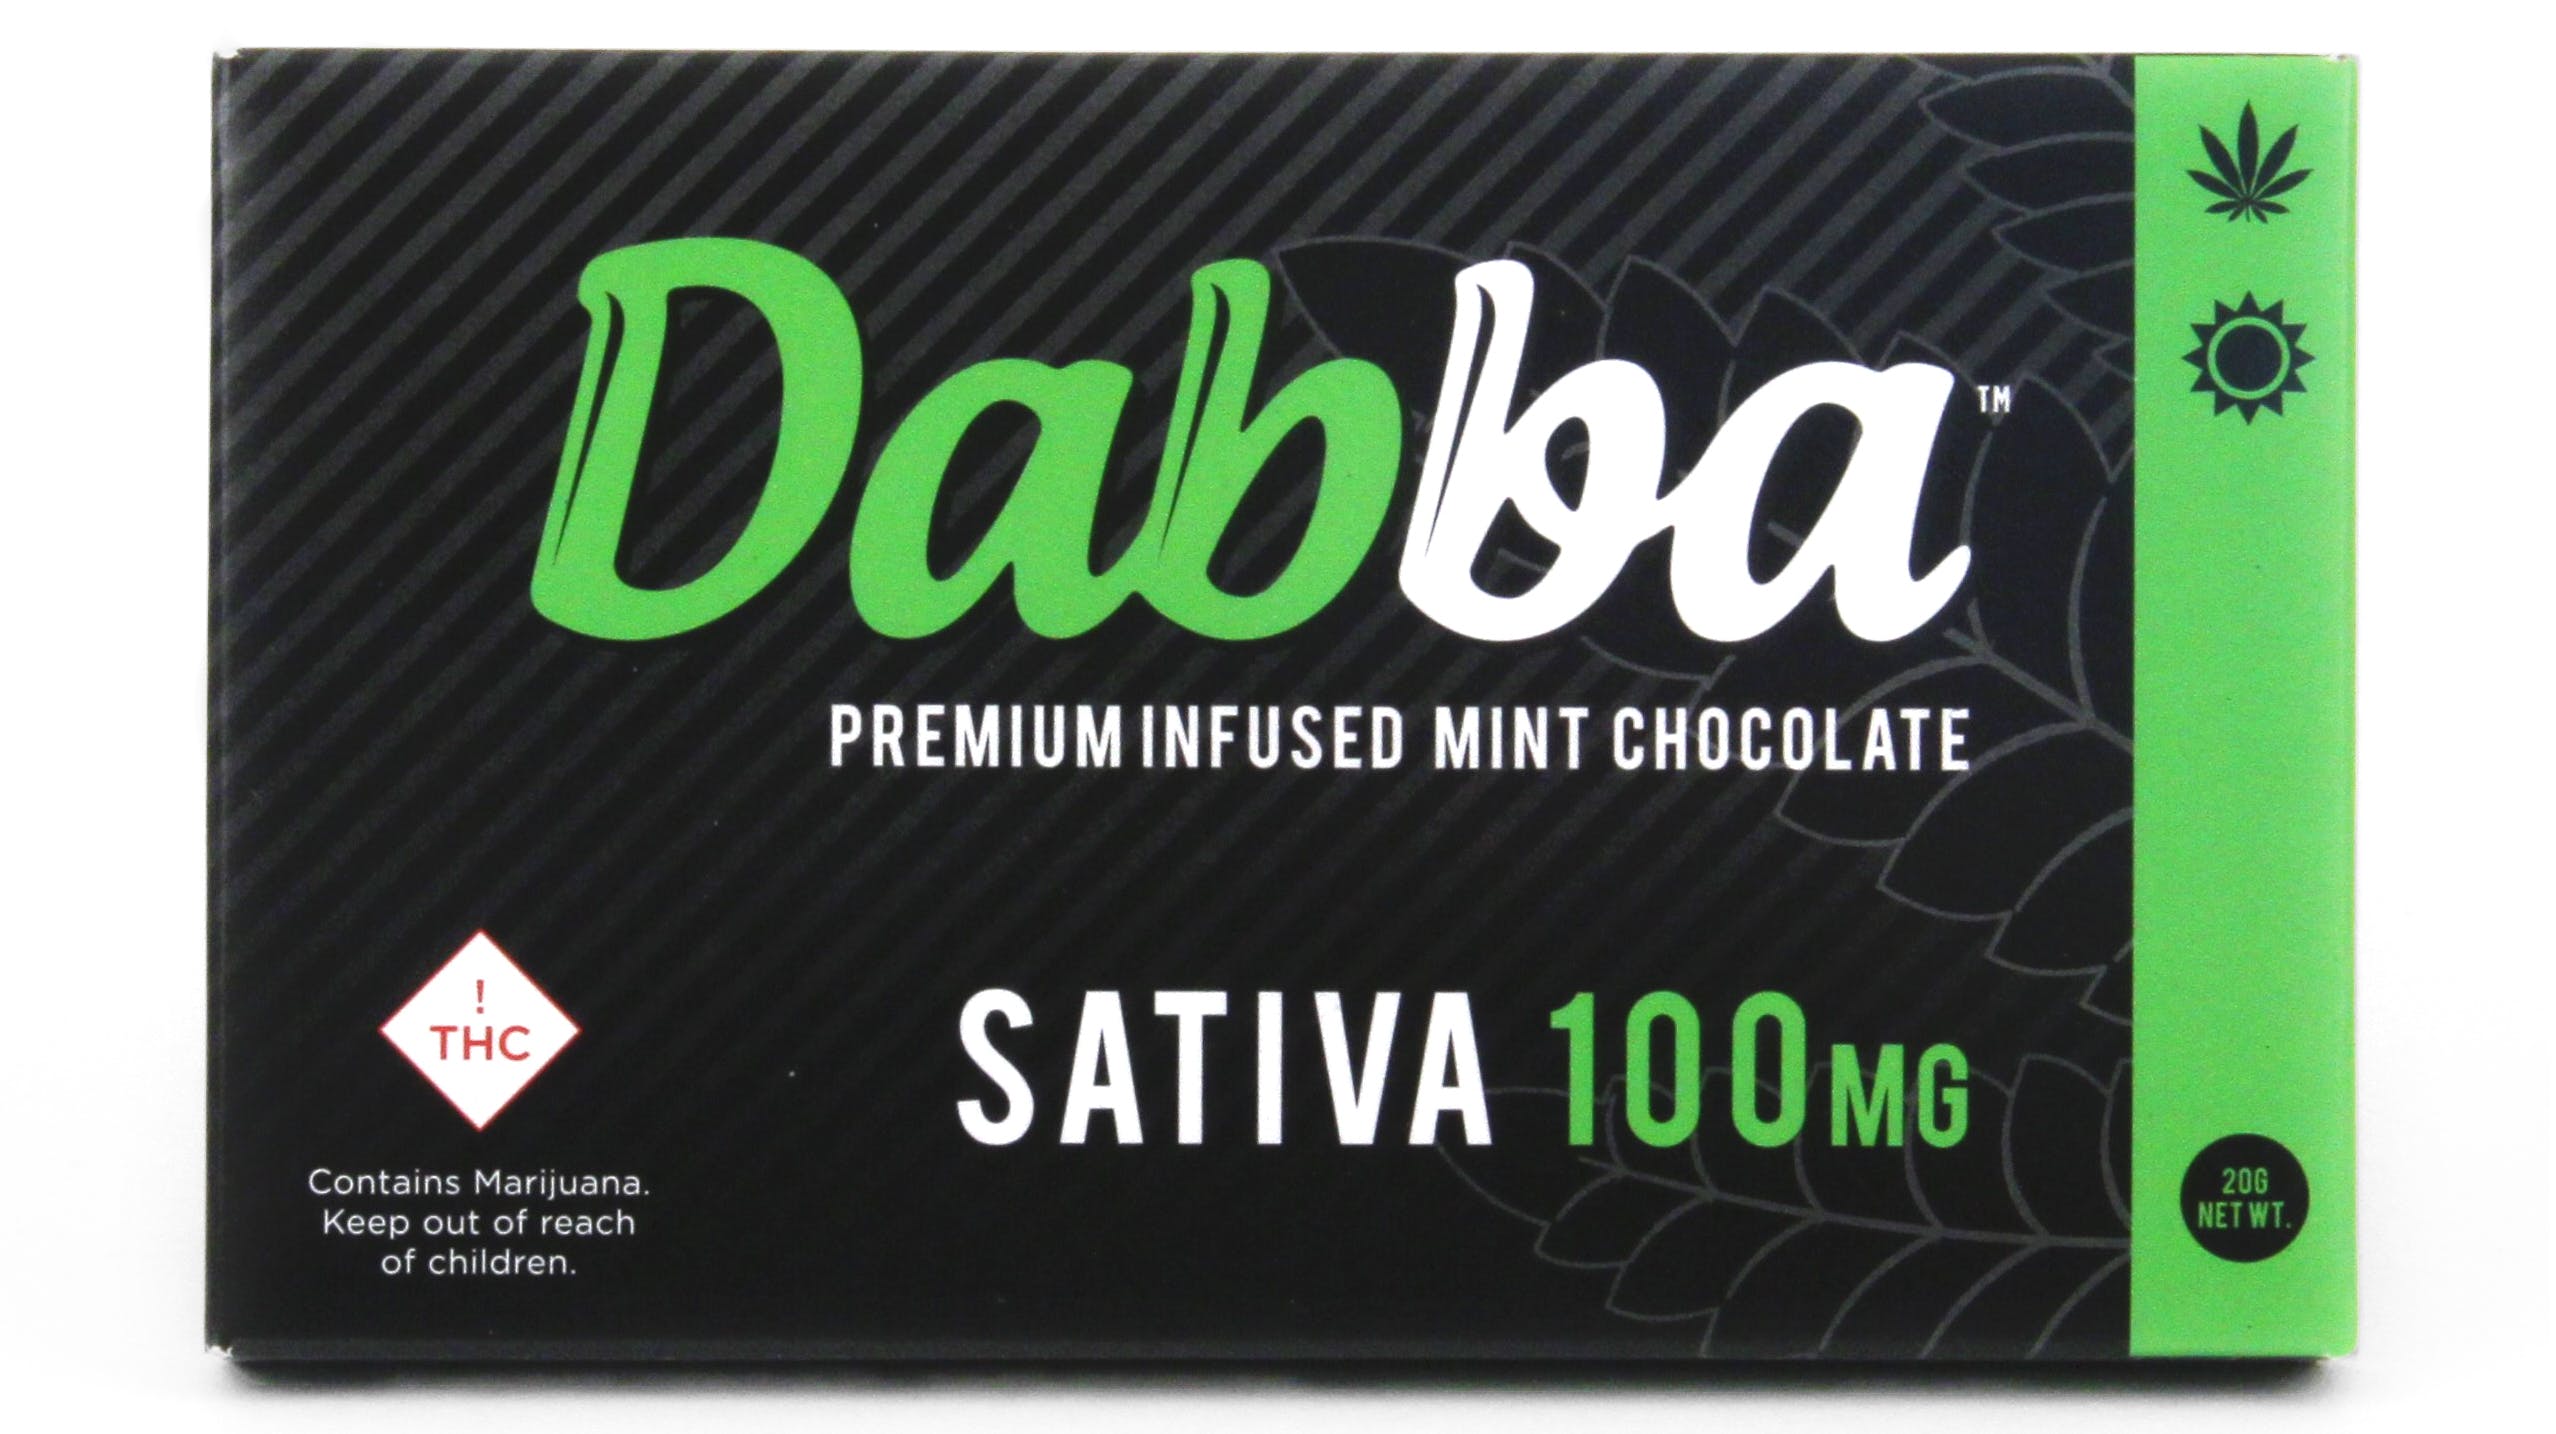 edible-dabba-chocolate-100mg-sativa